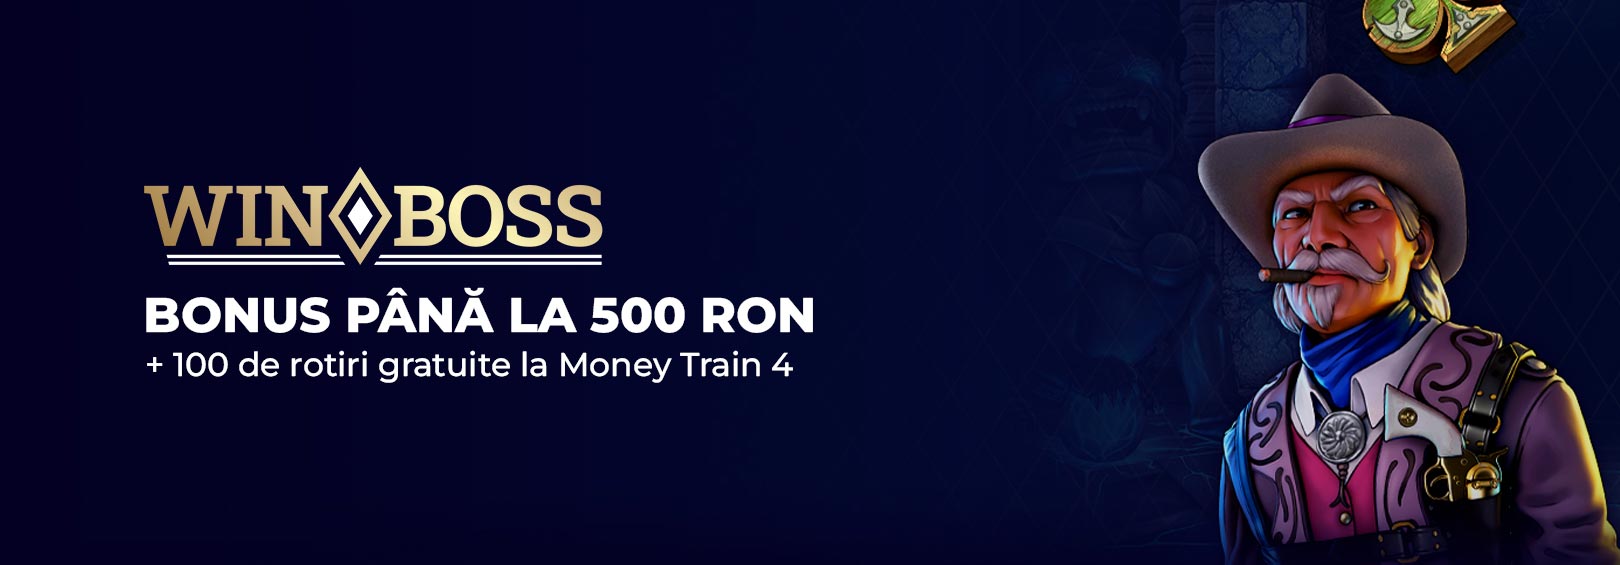 bonus Winboss 500 RON